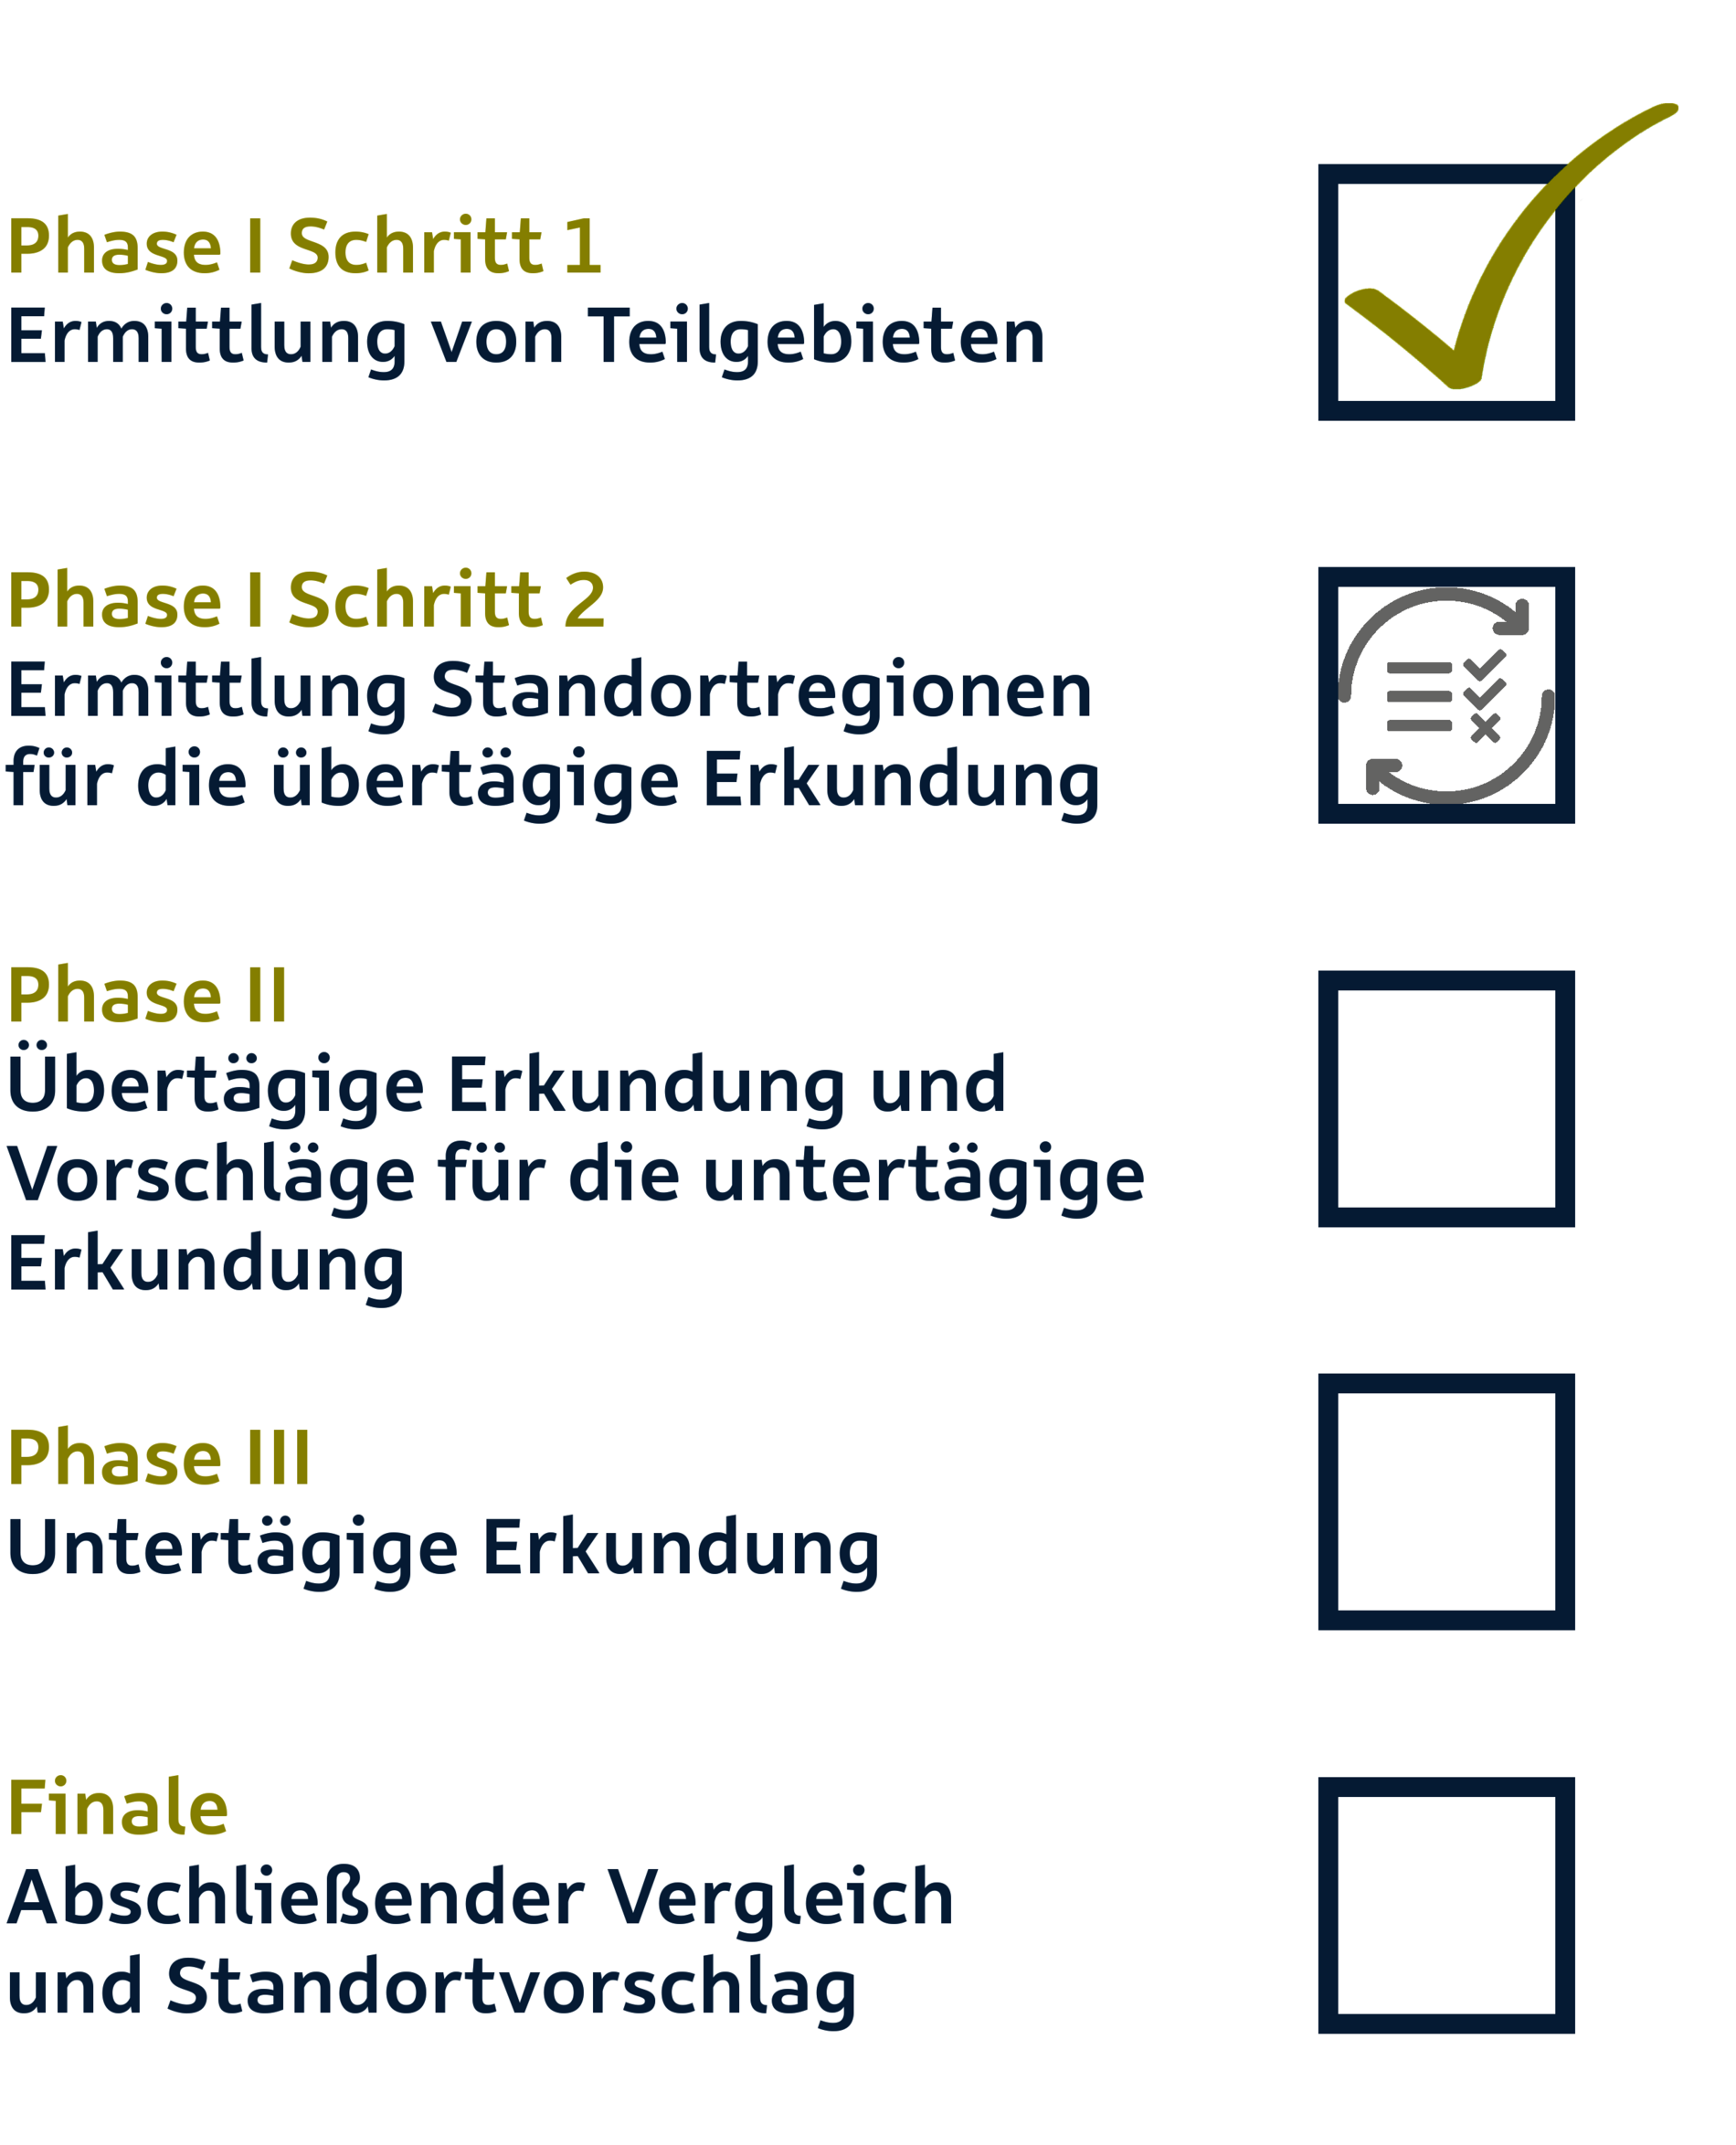 Die Phasen des Standortauswahlverfahrens als Checkliste. Bereits erledigt: Phase I Schritt 1